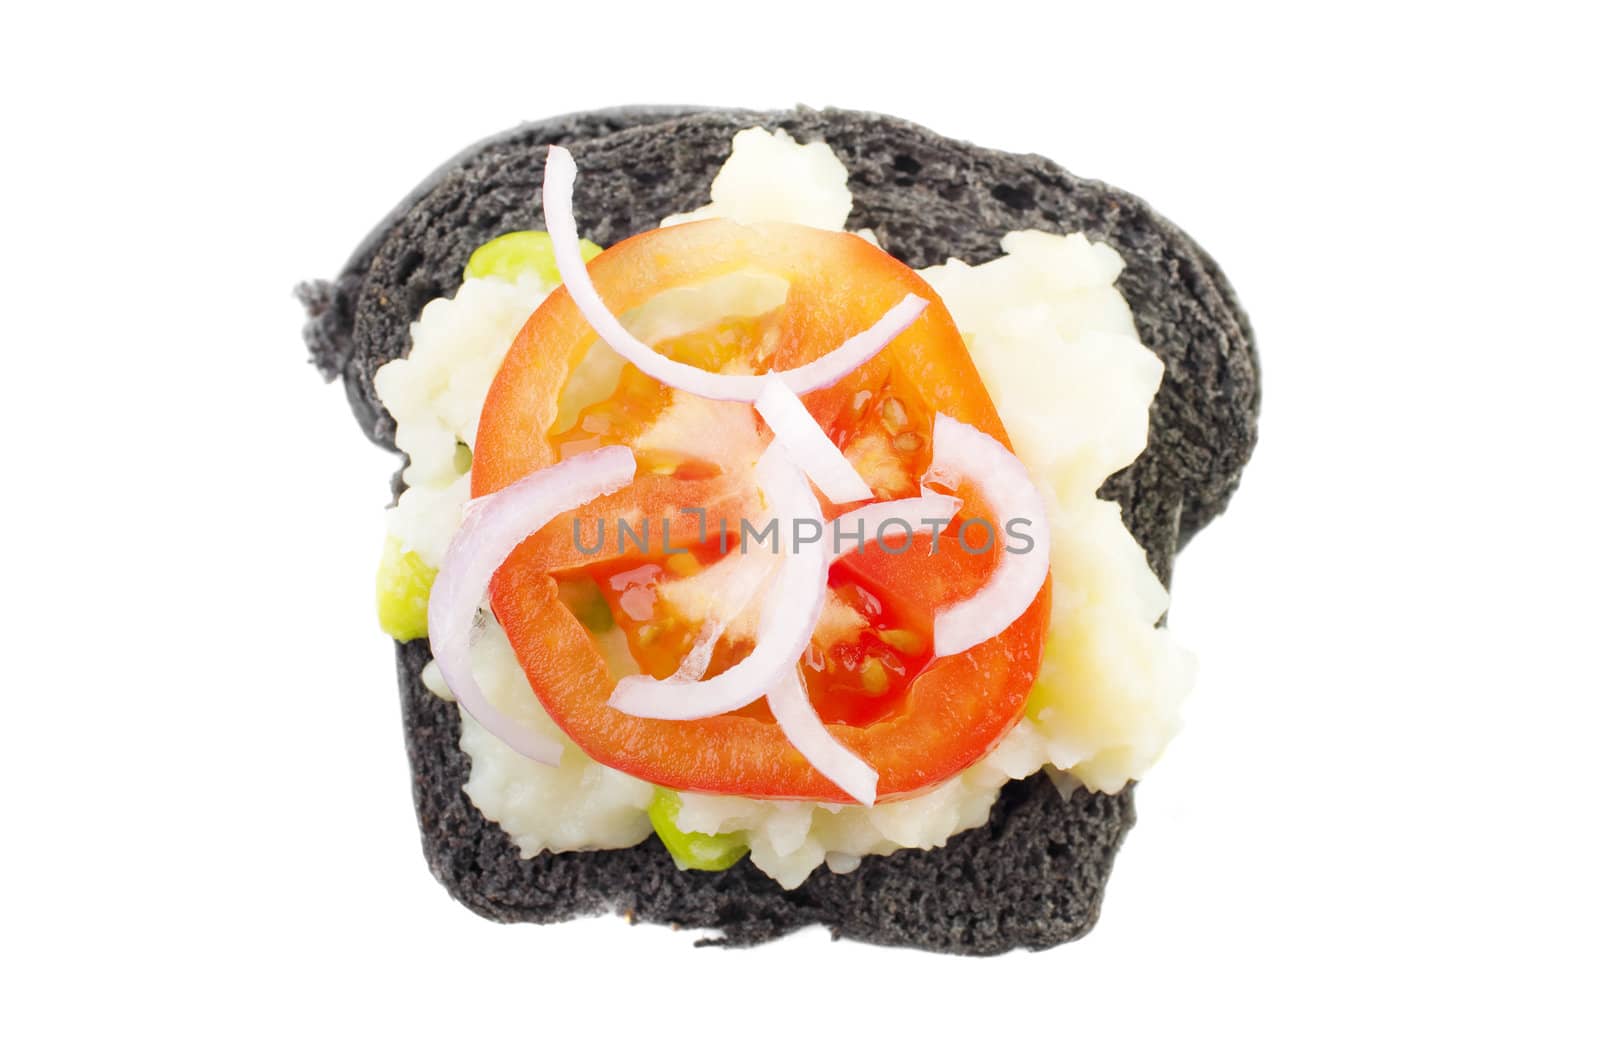 Black charcoal sandwich by szefei